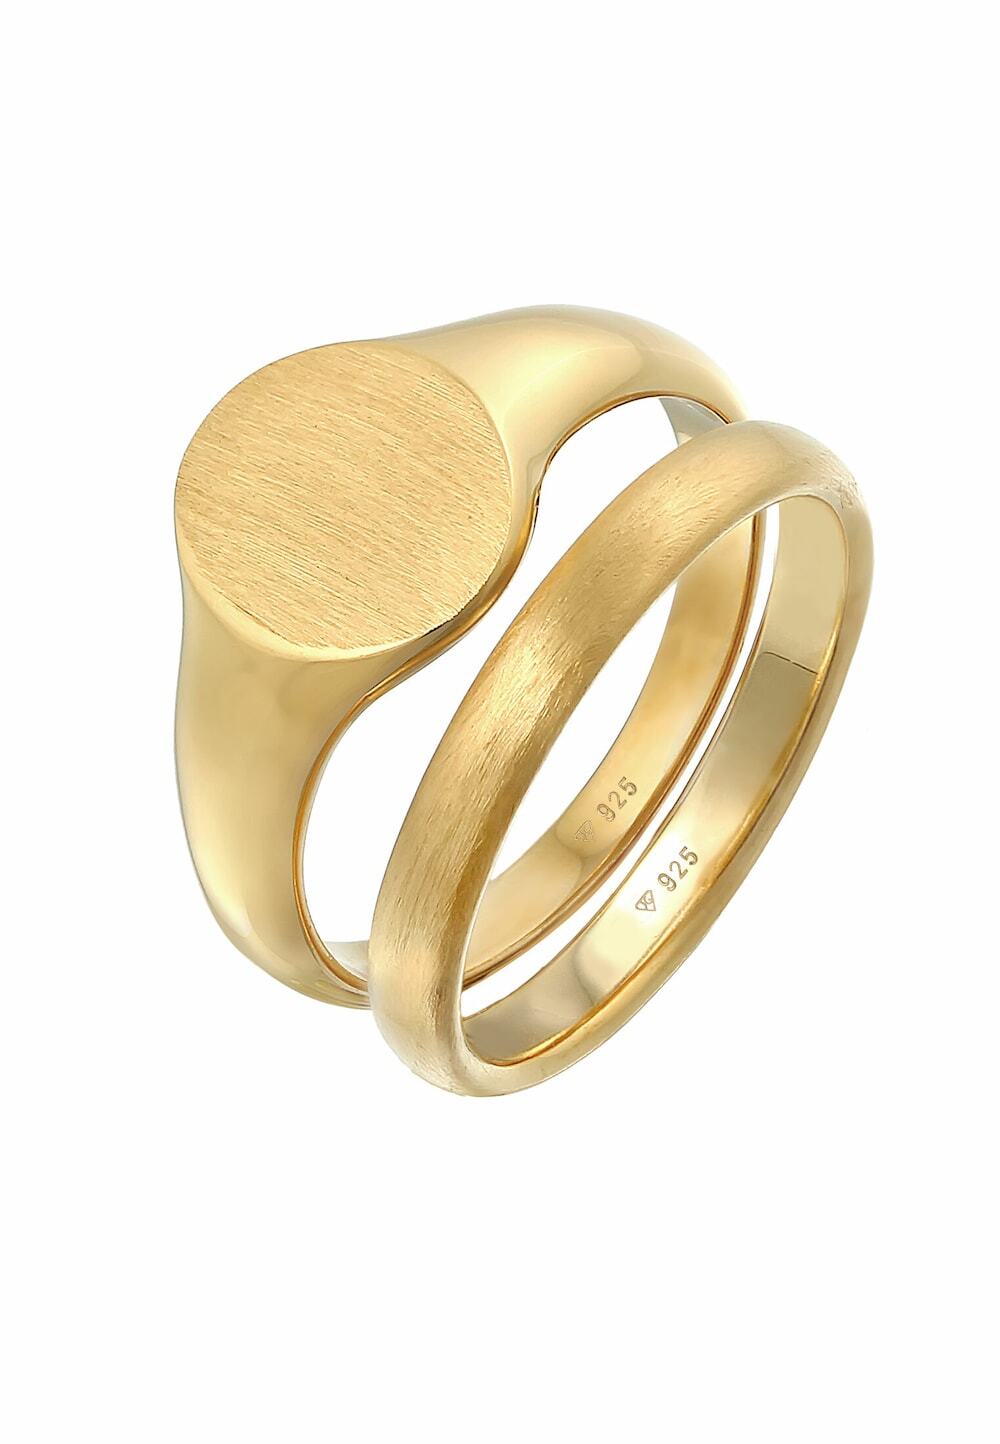 KUZZOI KUZZOI KUZZOI Ring Heren zegelring ring set Basic Minimal Trend in 925 Sterling Zilver Ringen